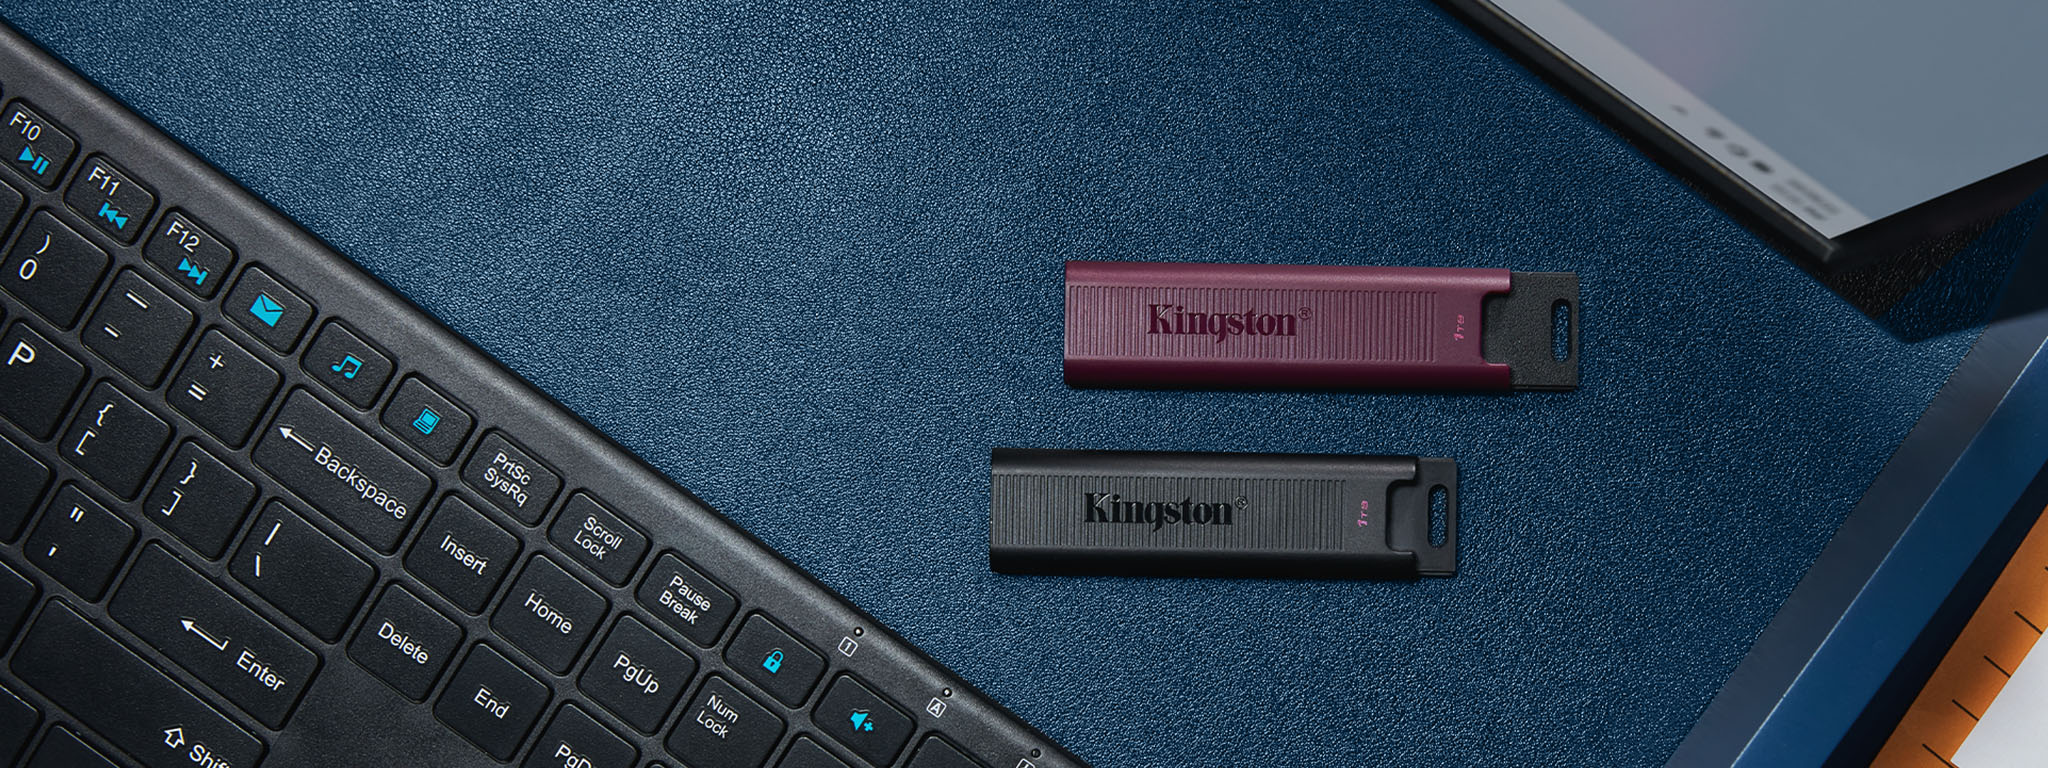 Bir klavye ve monitör arasında duran siyah USB-C ve bordo USB-A DT Max flash sürücülerin üstten görünümü